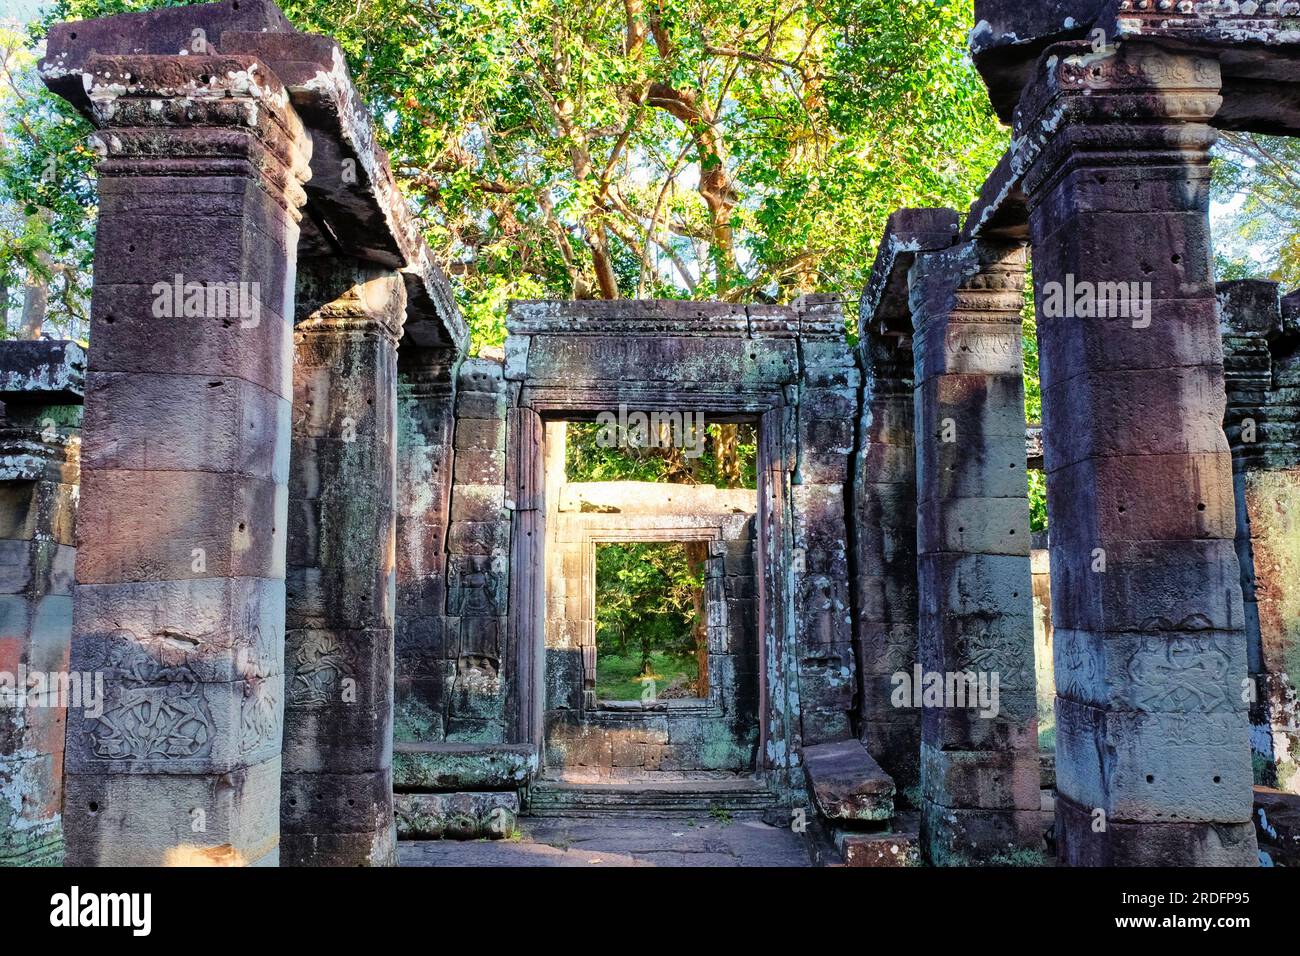 Immagine che rivela i resti di una struttura in pietra medievale con sede in Cambogia. Foto Stock